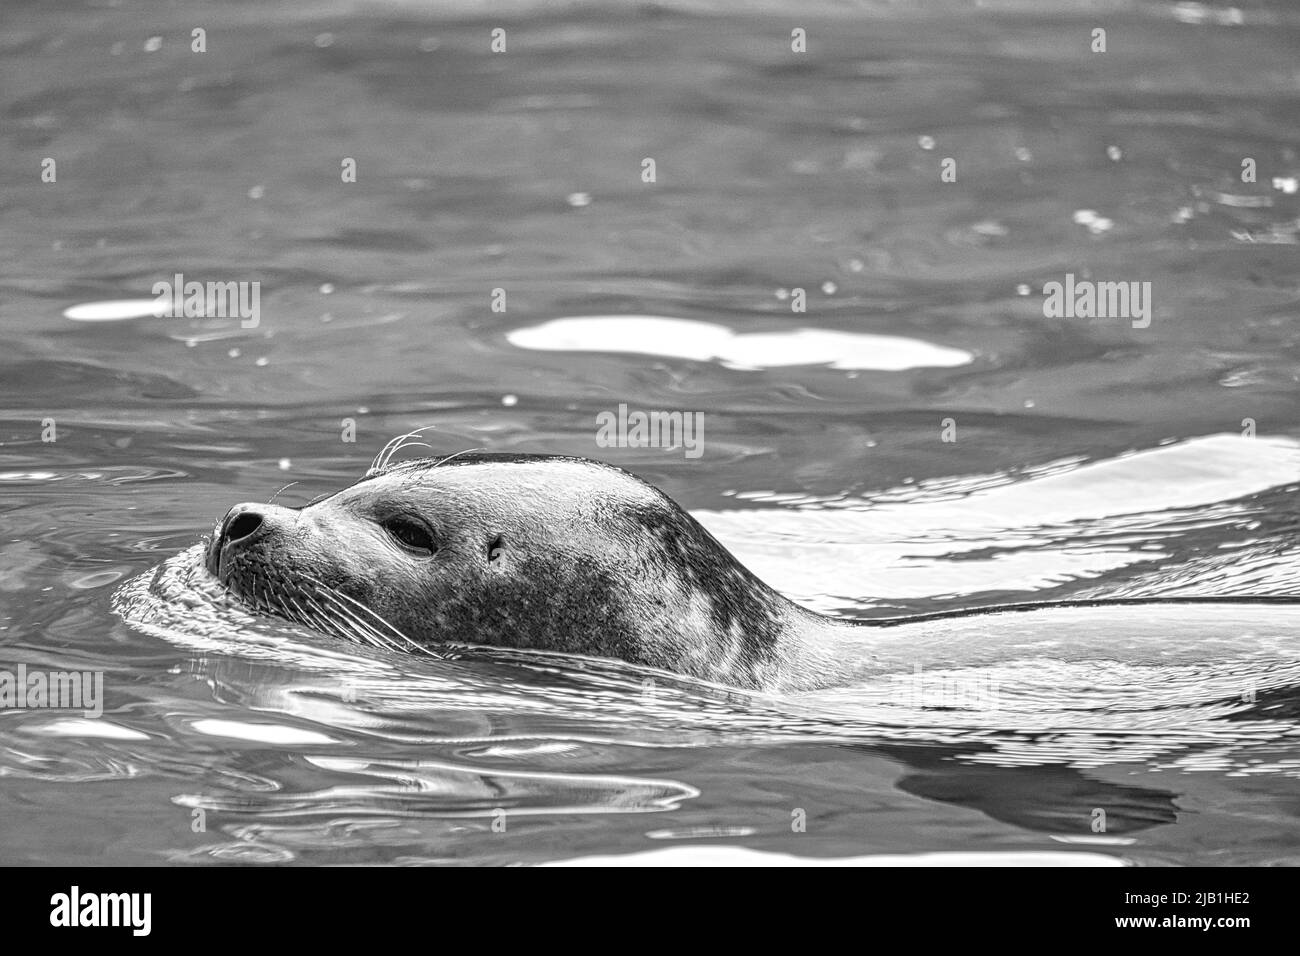 Robbe in schwarz und weiß, schwimmend im Wasser. Nahaufnahme des Säugetiers. Gefährdete Arten in Deutschland. Tierfoto Stockfoto